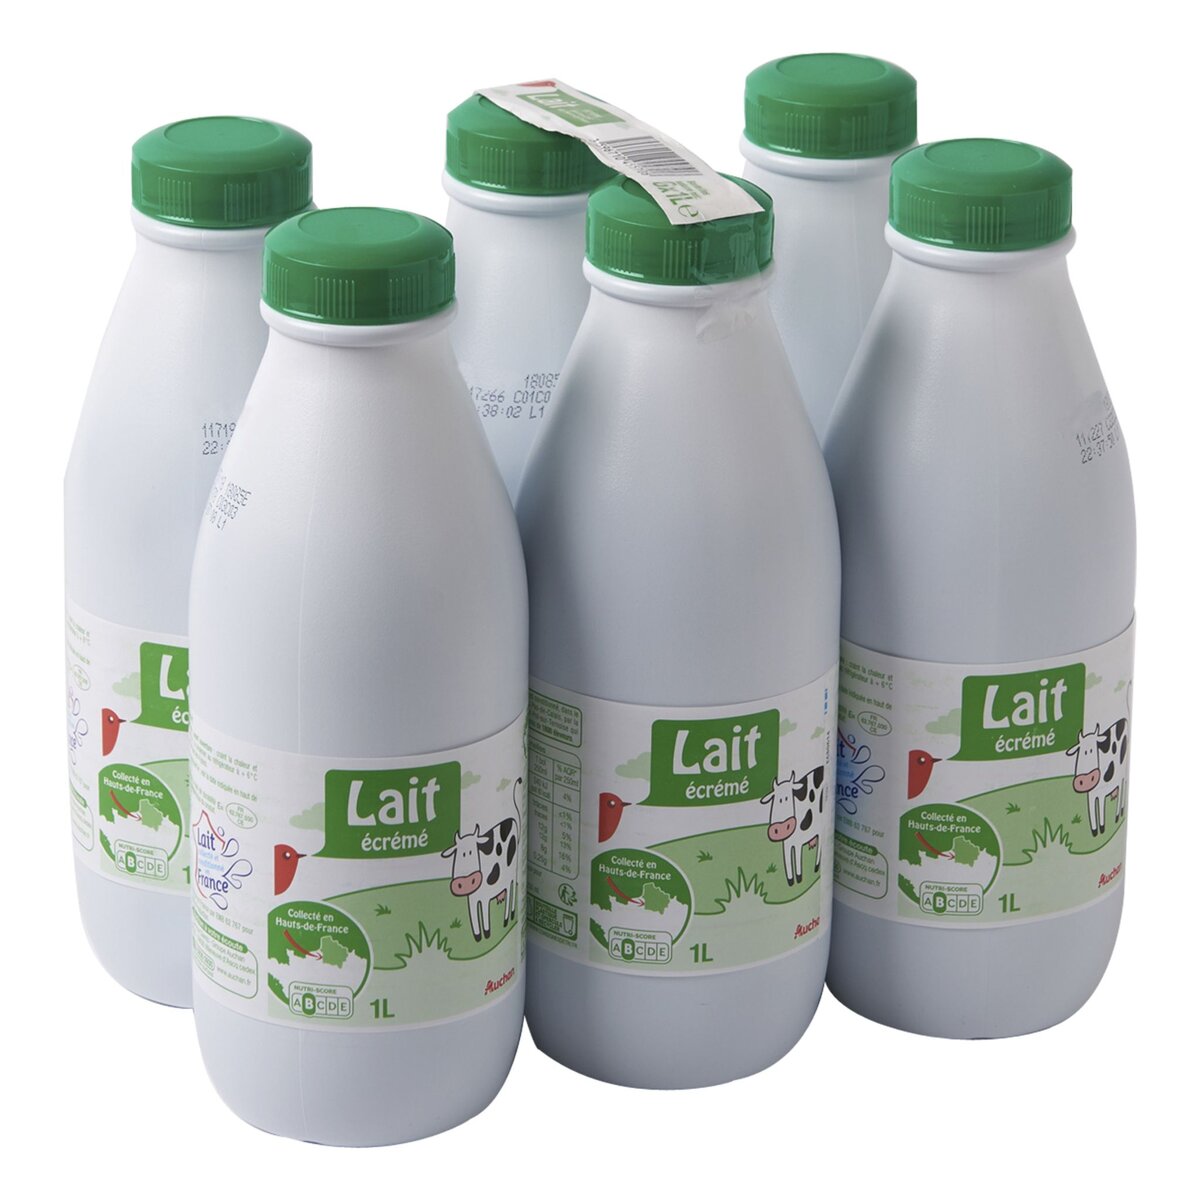 AUCHAN Auchan lait Hauts-de-France écrémé 6x1l